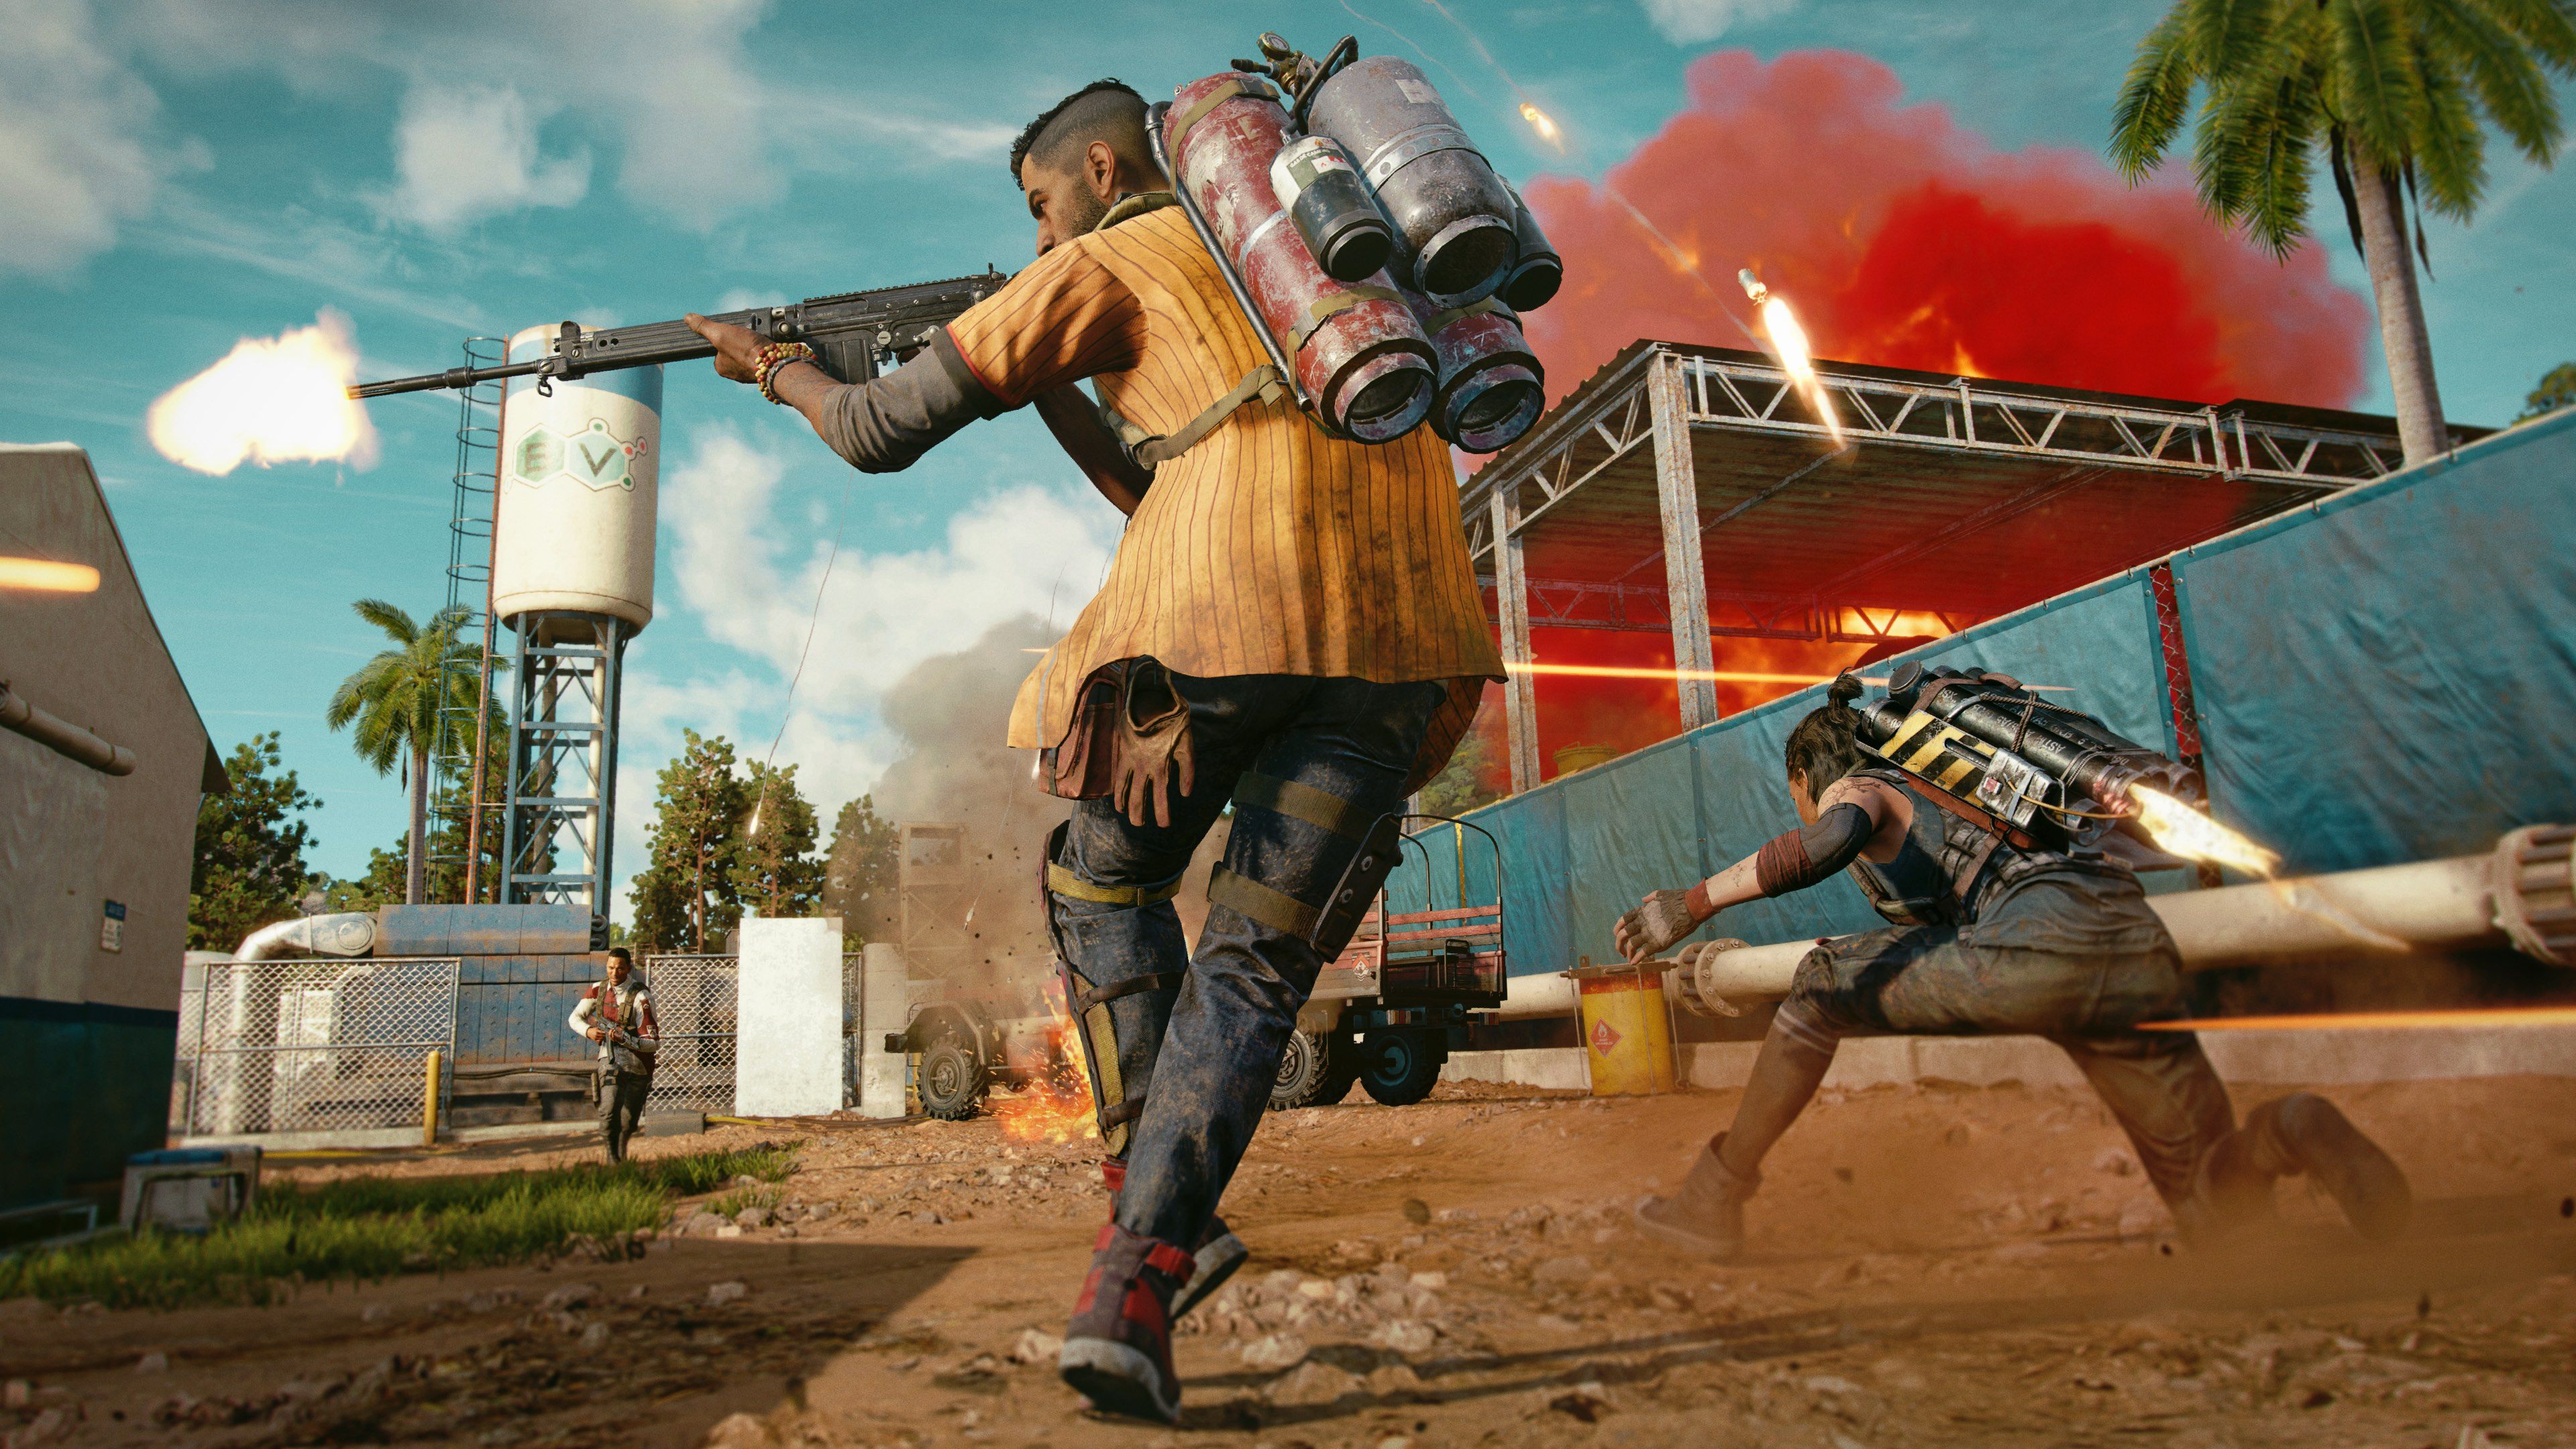 Ubisoft detalla los requisitos de Far Cry 6 y las características  específicas para PC